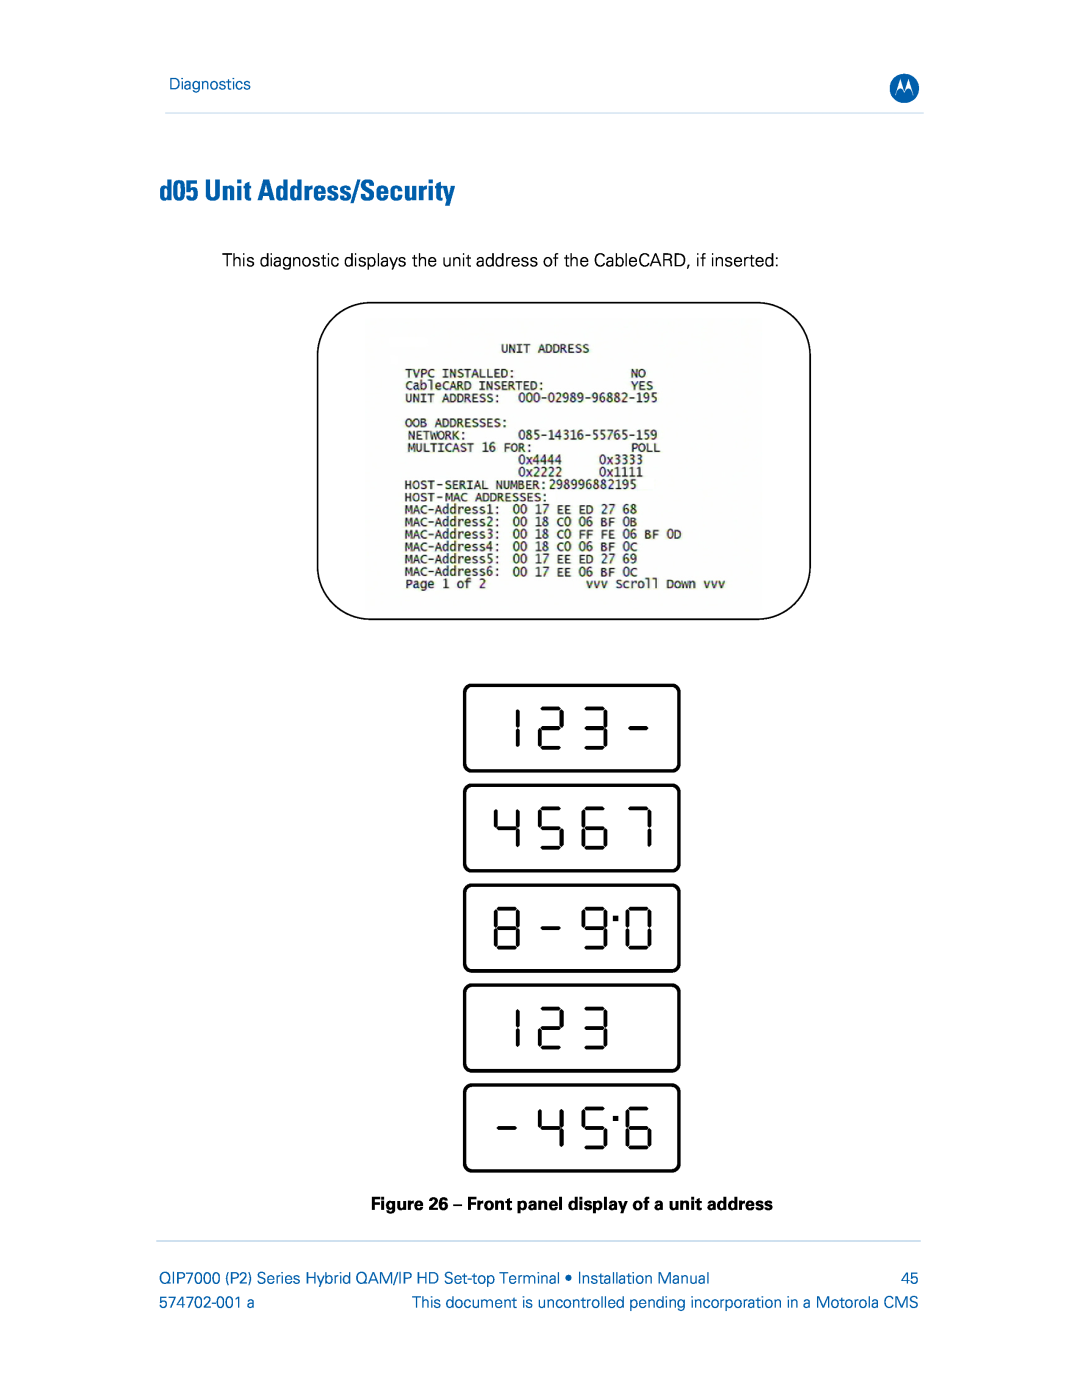 Motorola QIP7000 d05 Unit Address/Security, Front panel display of a unit address, Diagnostics, 574702-001 a 